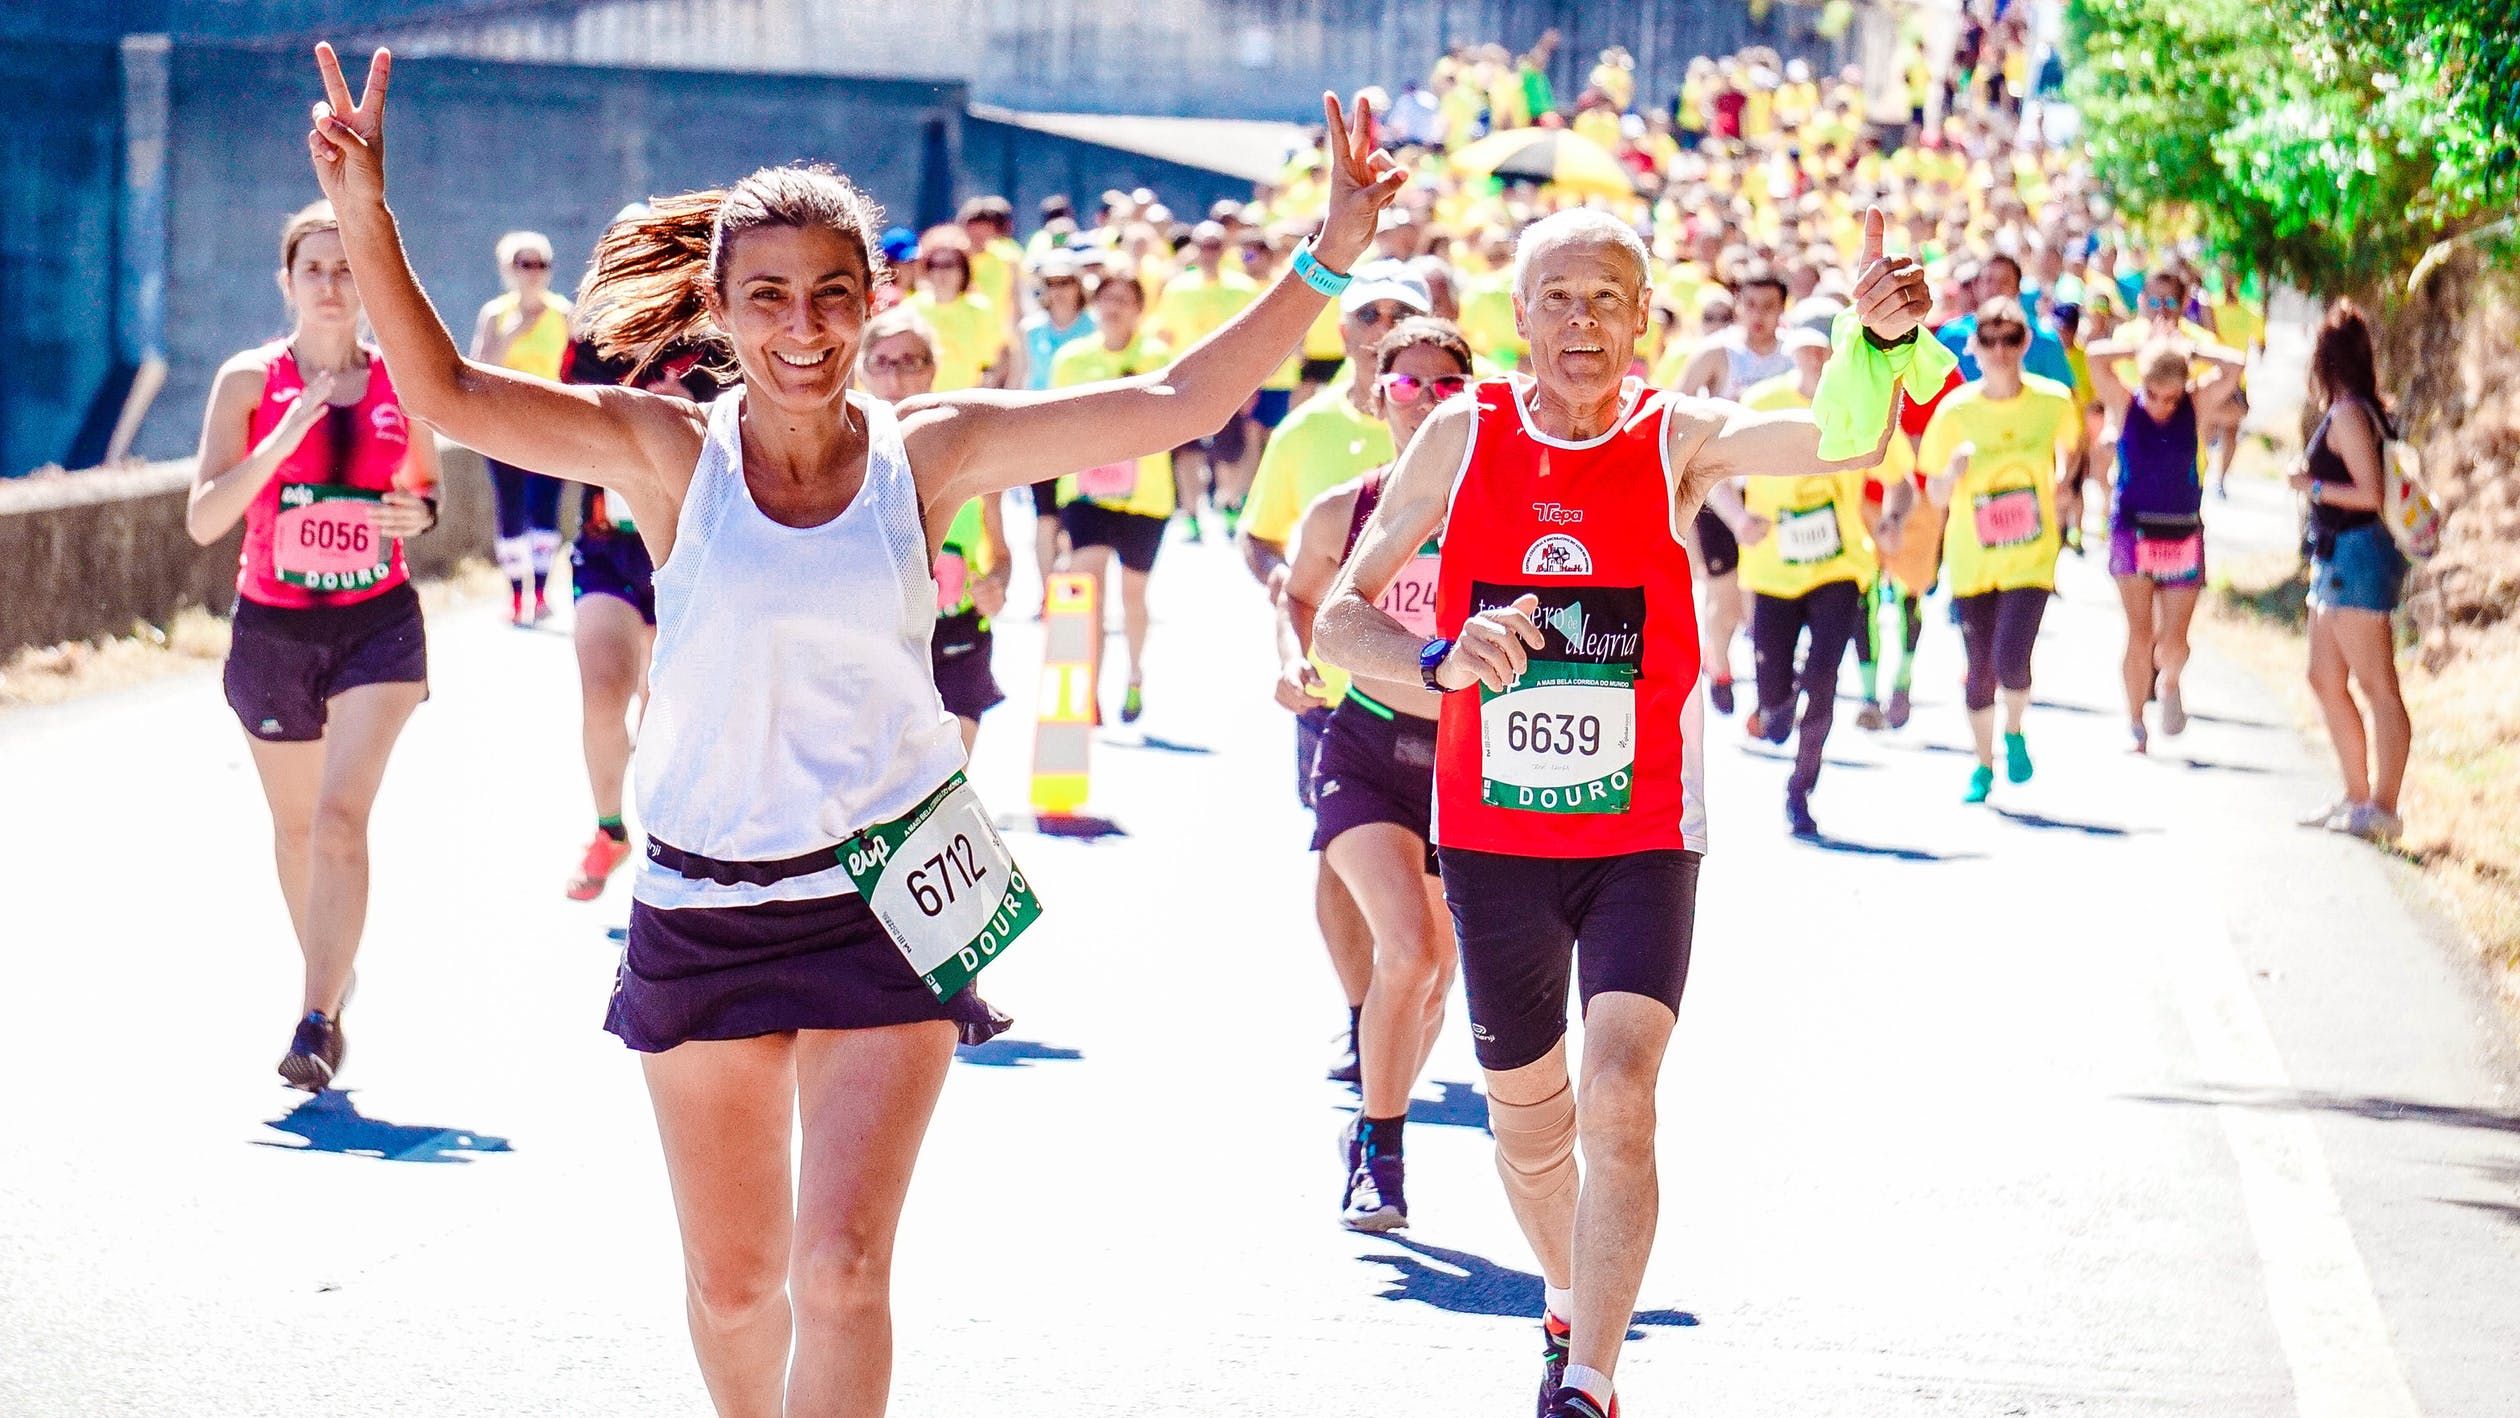 Consejos para correr una maratón con seguridad